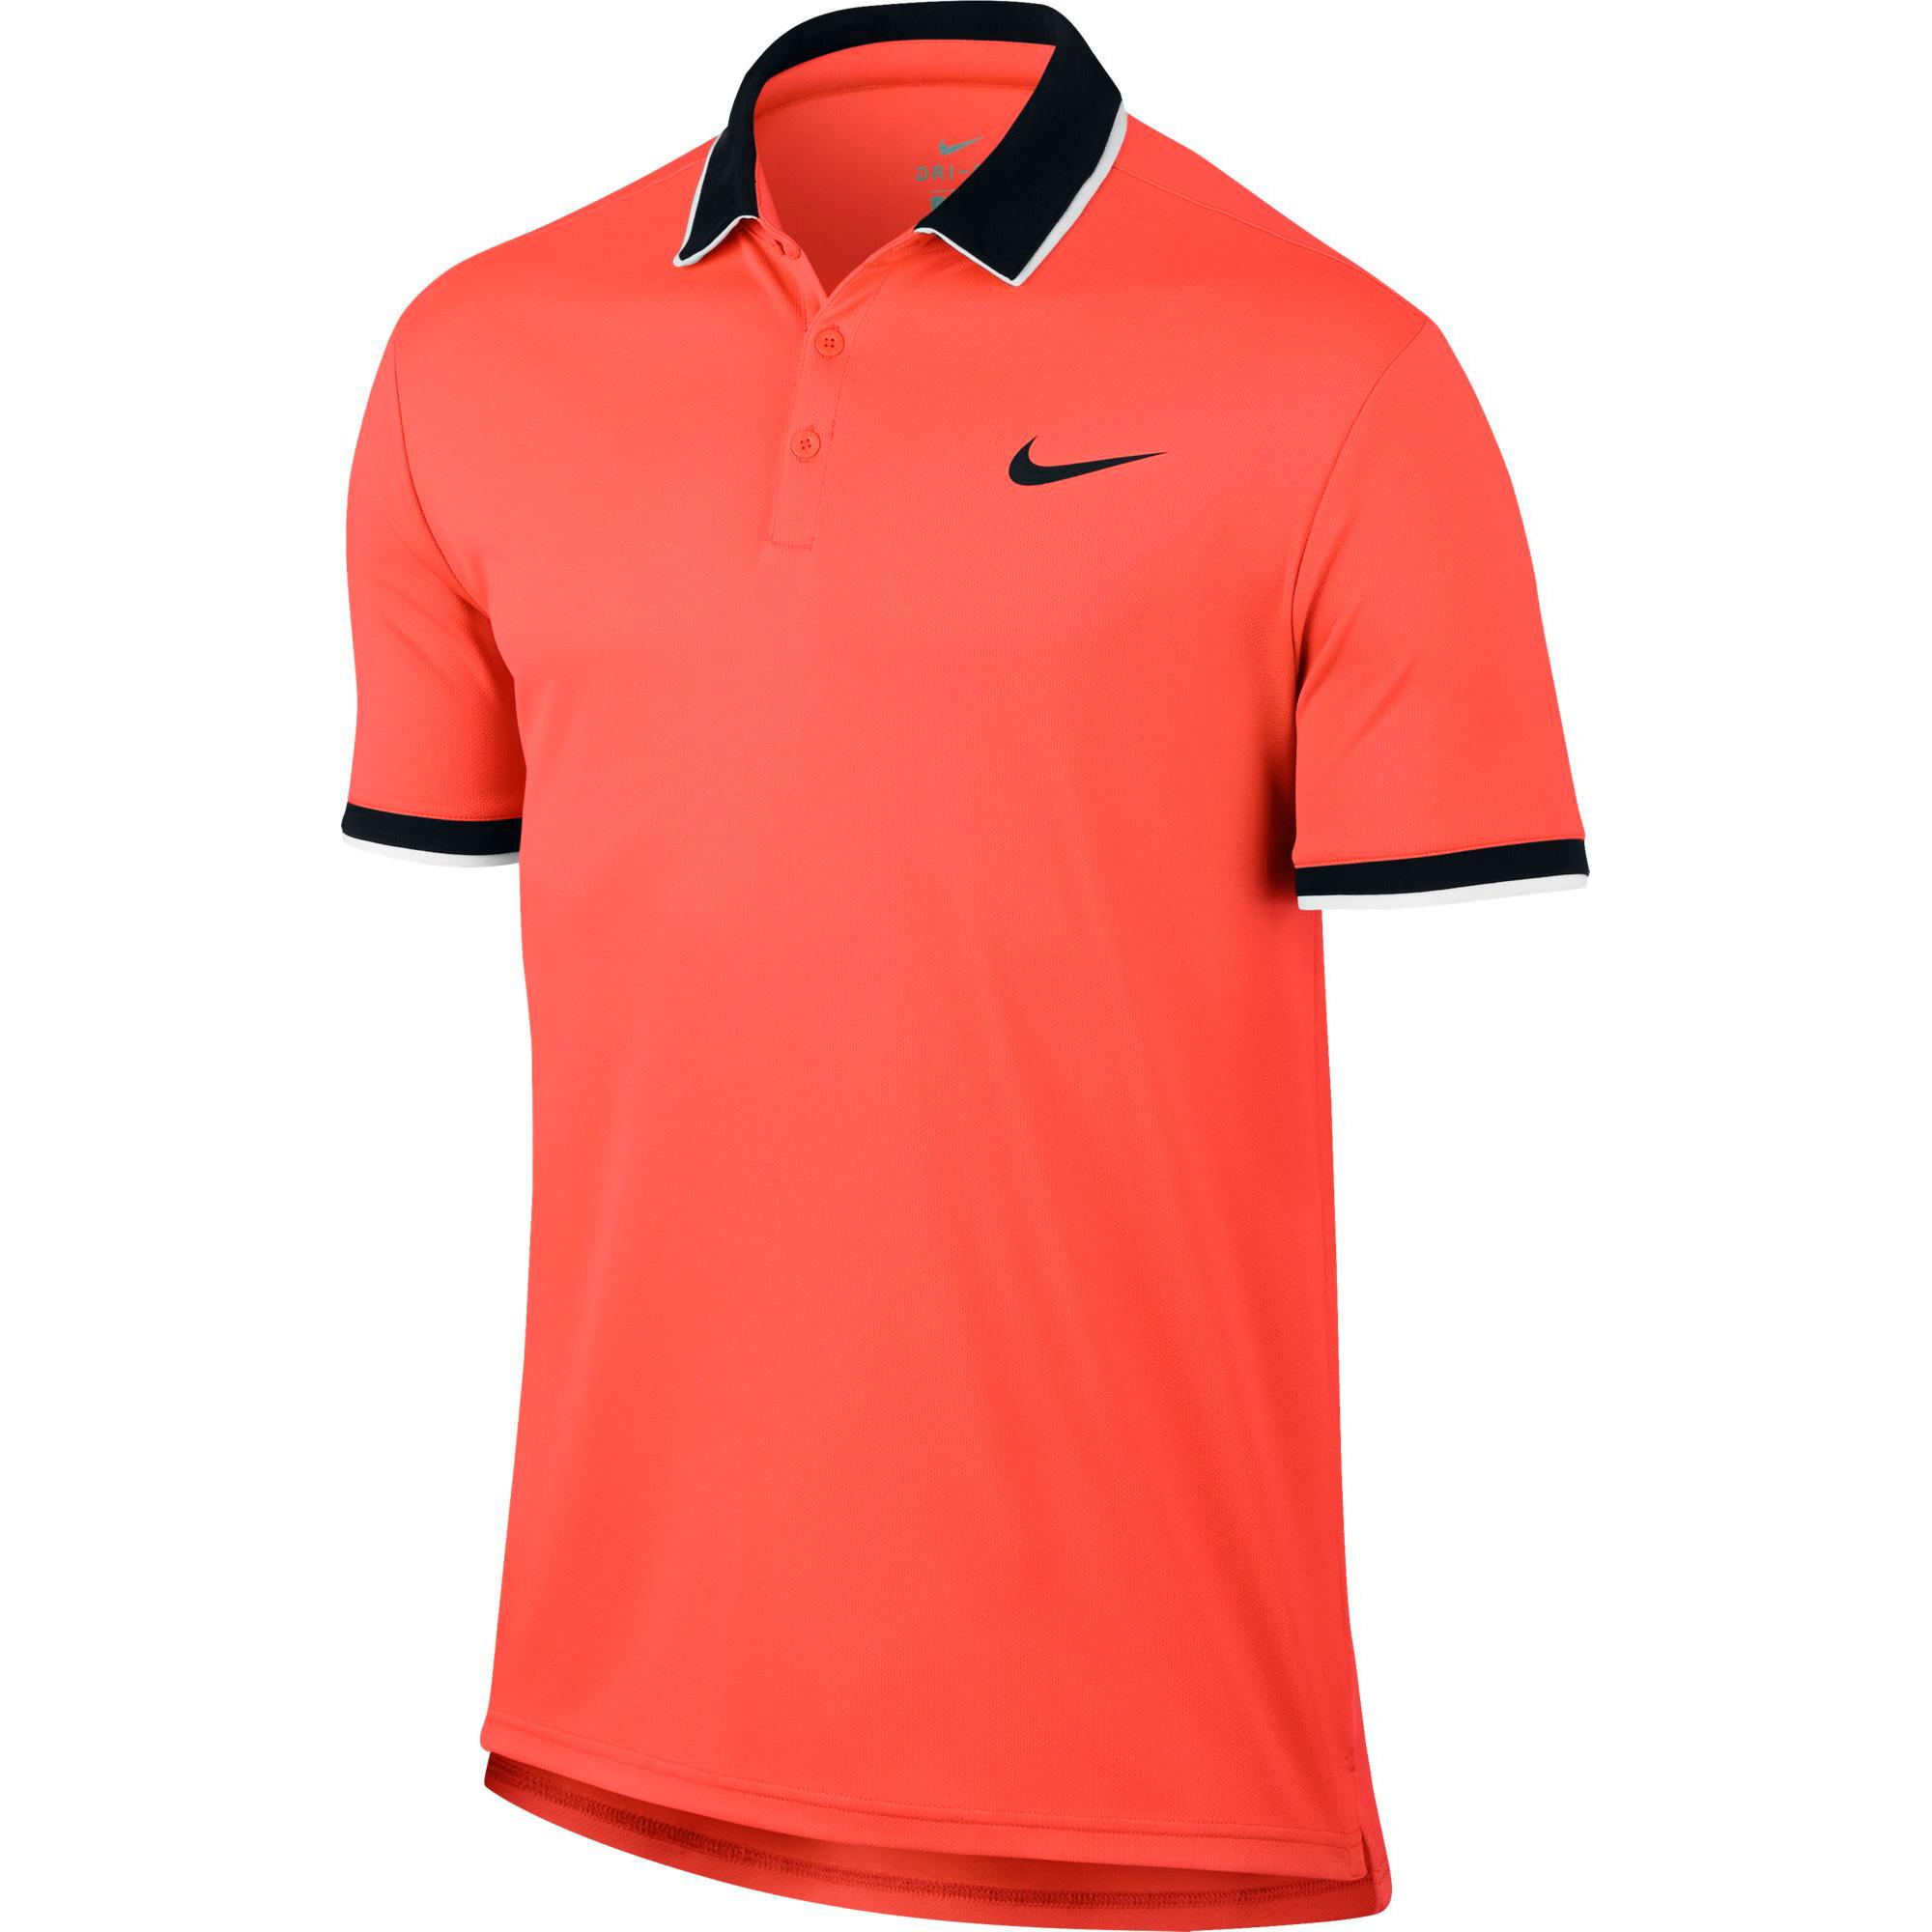 Nike Mens Dry Tennis Polo - Hyper Orange/Black - Tennisnuts.com